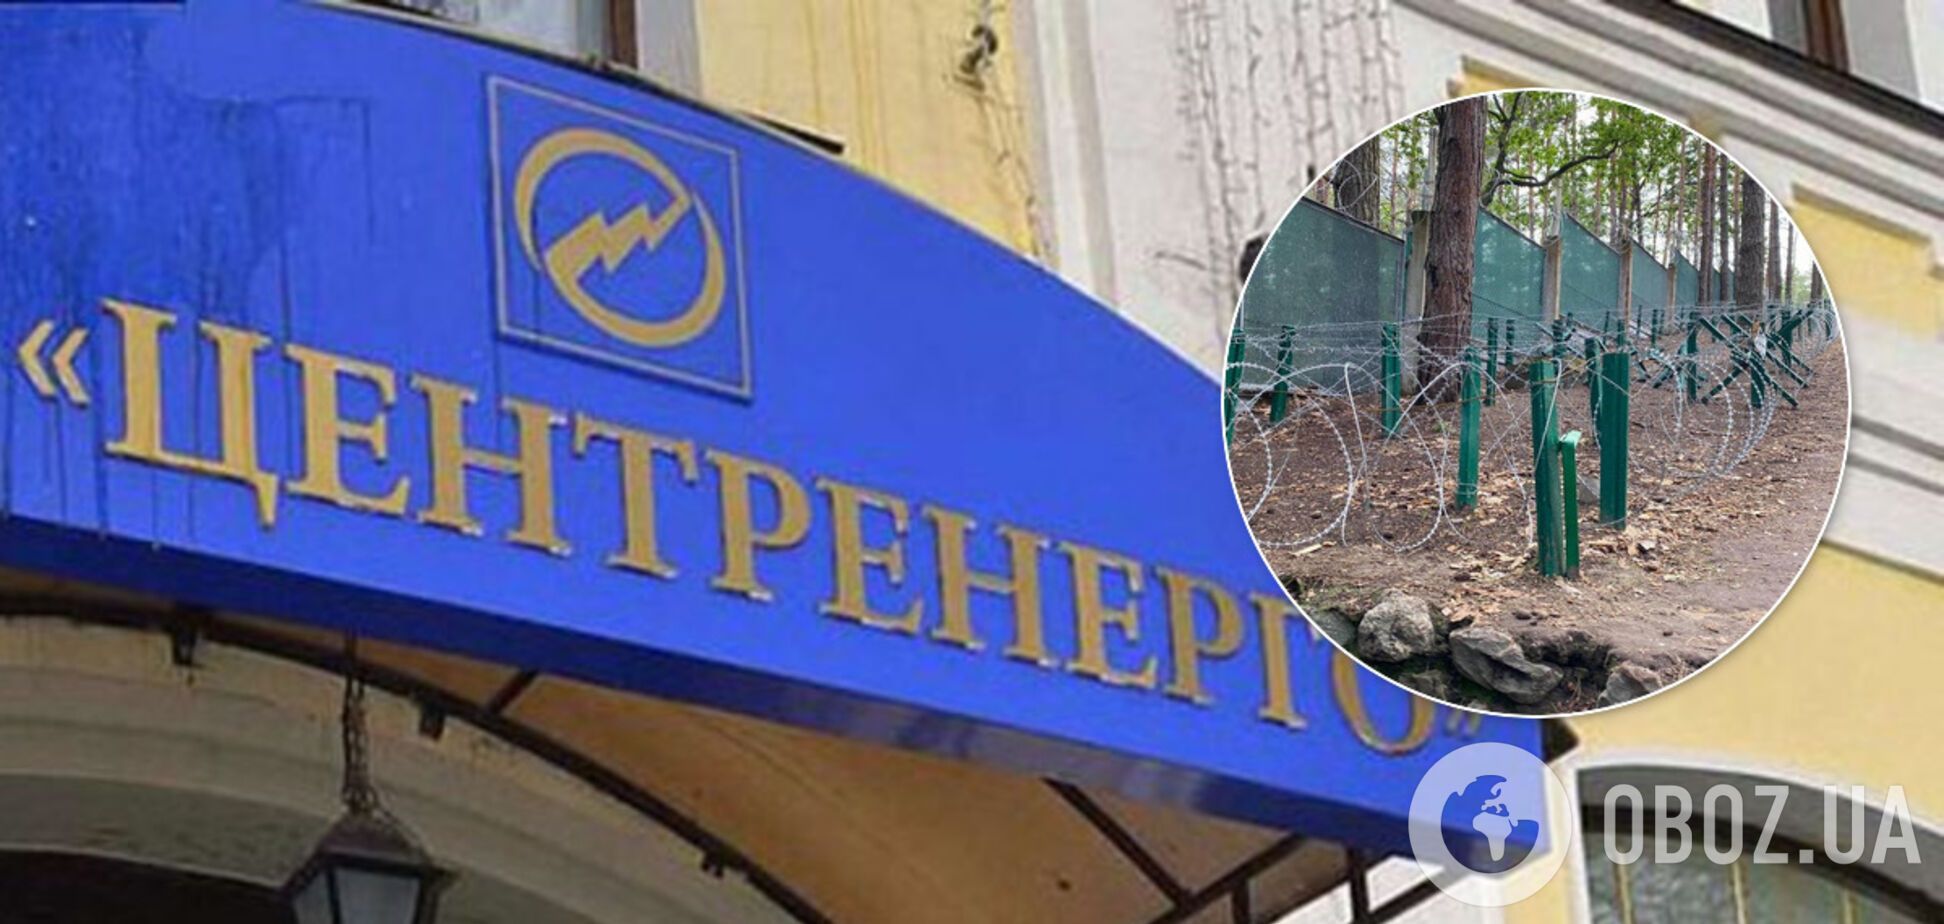 Боятся штурма? Офис 'Центрэнерго' втихаря перенесли в санаторий на Киевщине